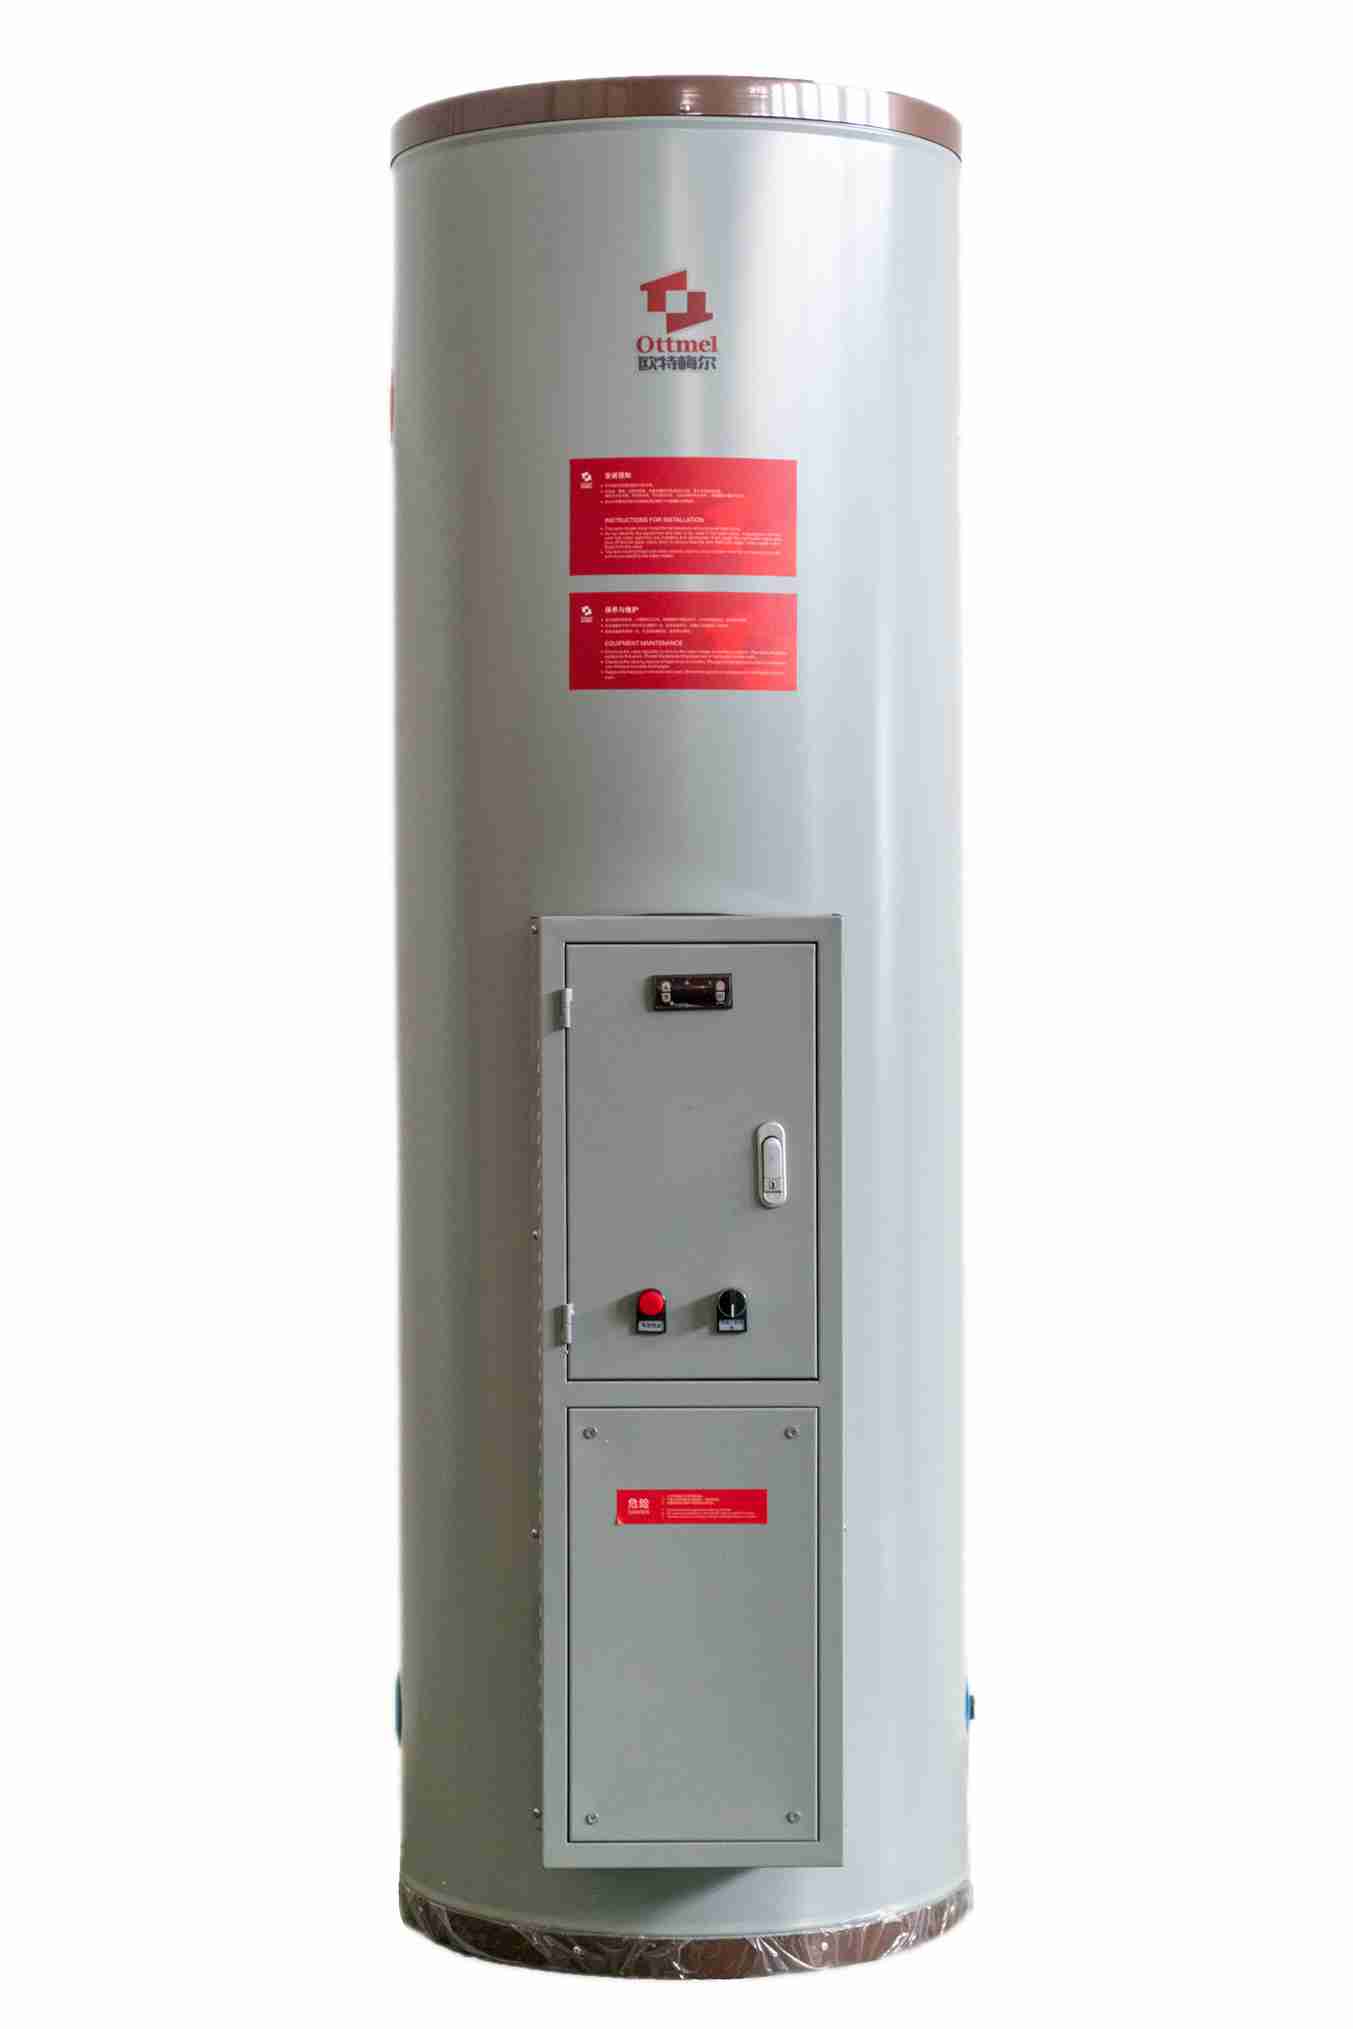 欧特梅尔容积式热水器高清图 欧特梅尔新能源供应